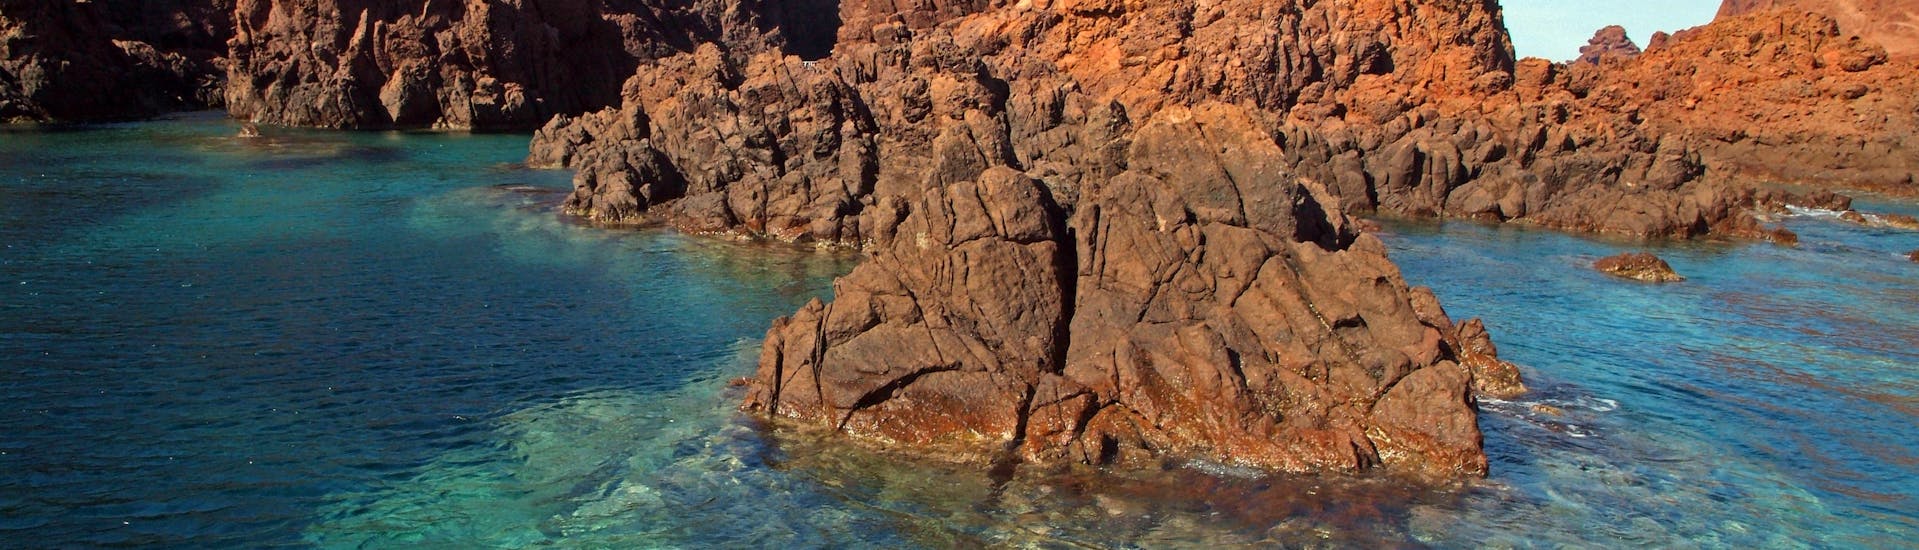 Formazioni rocciose che esploriamo durante la gita in barca da Porto alla Riserva della Scandola e alle Calanques de Piana con Corse Émotion.